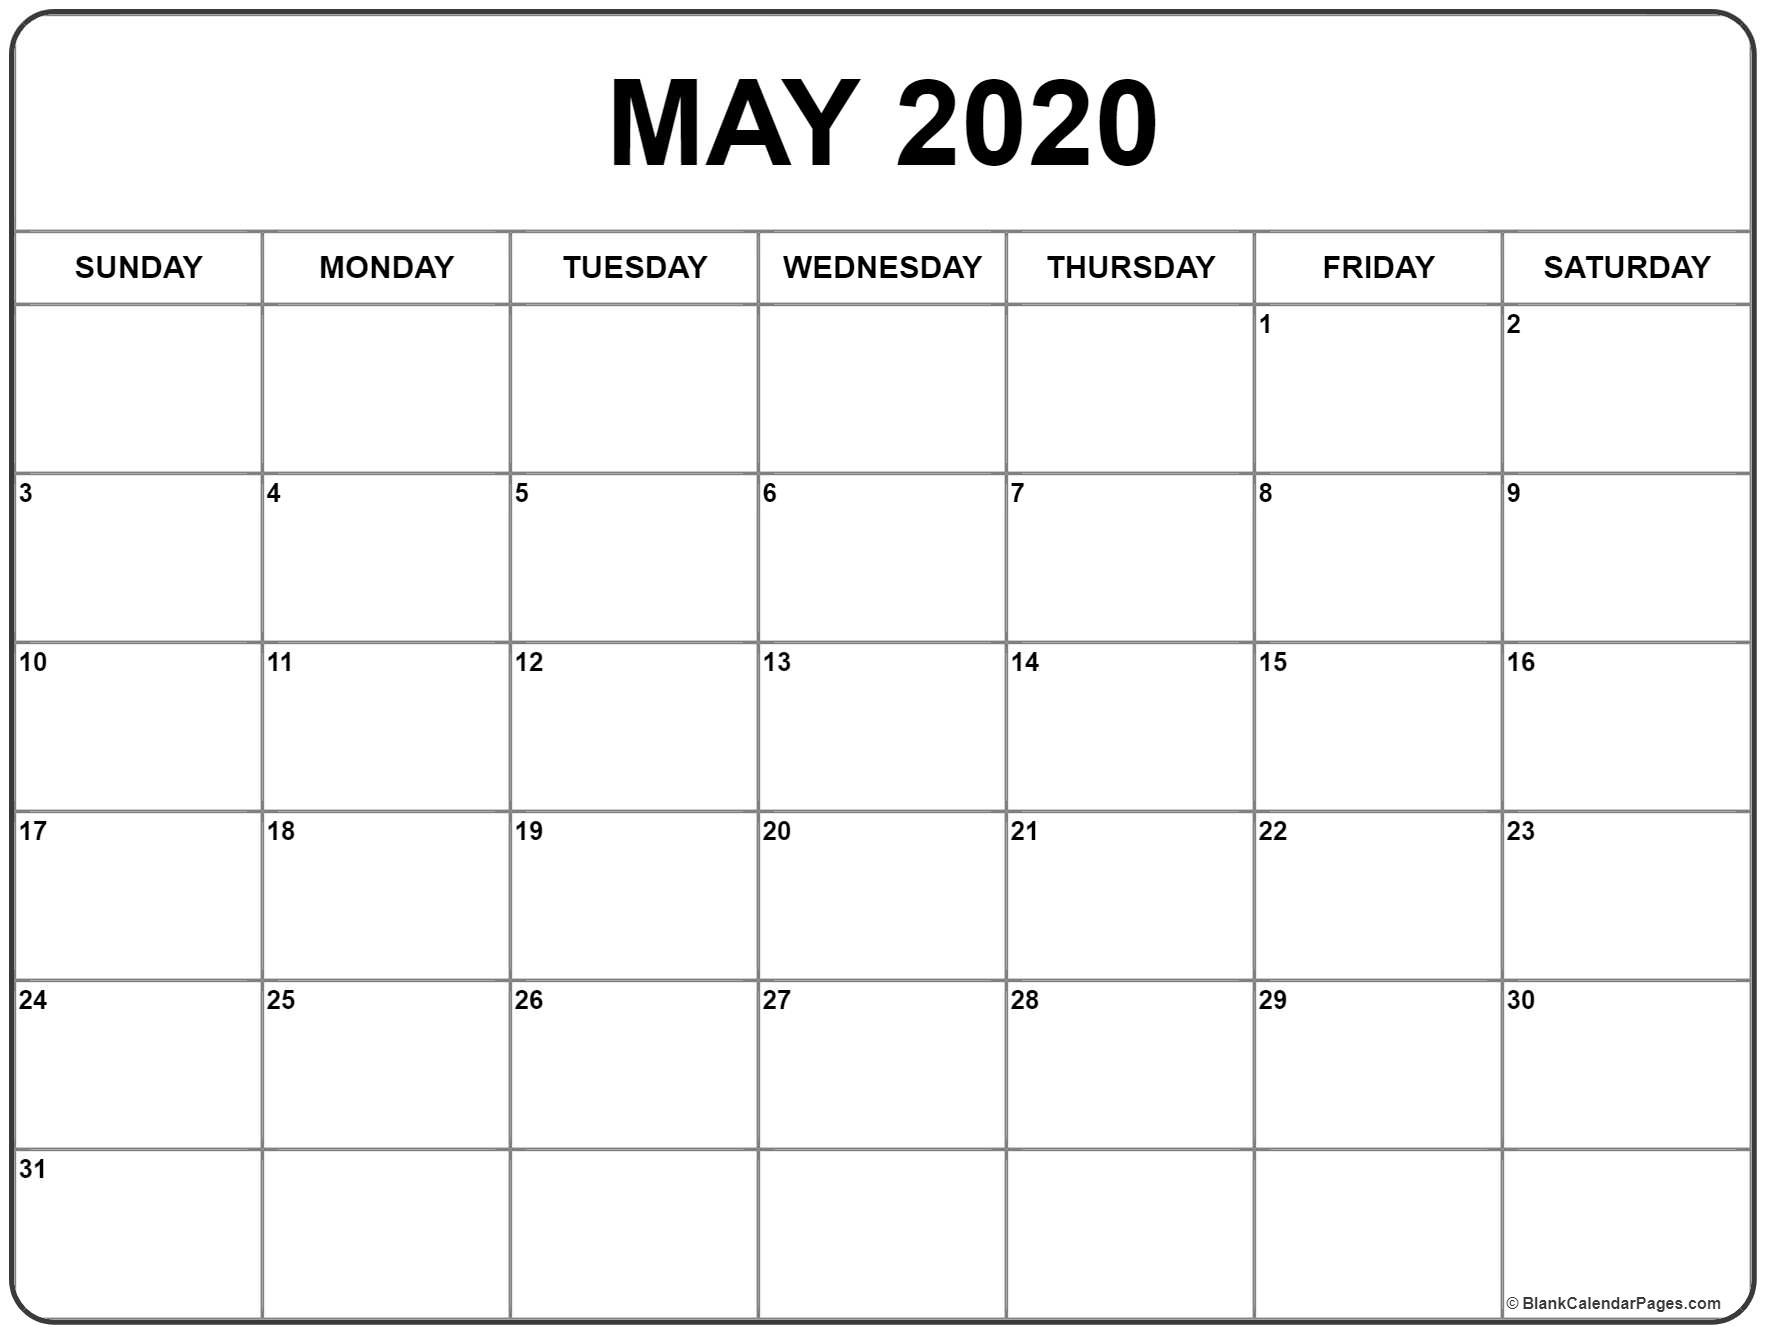 May 2020 calendar